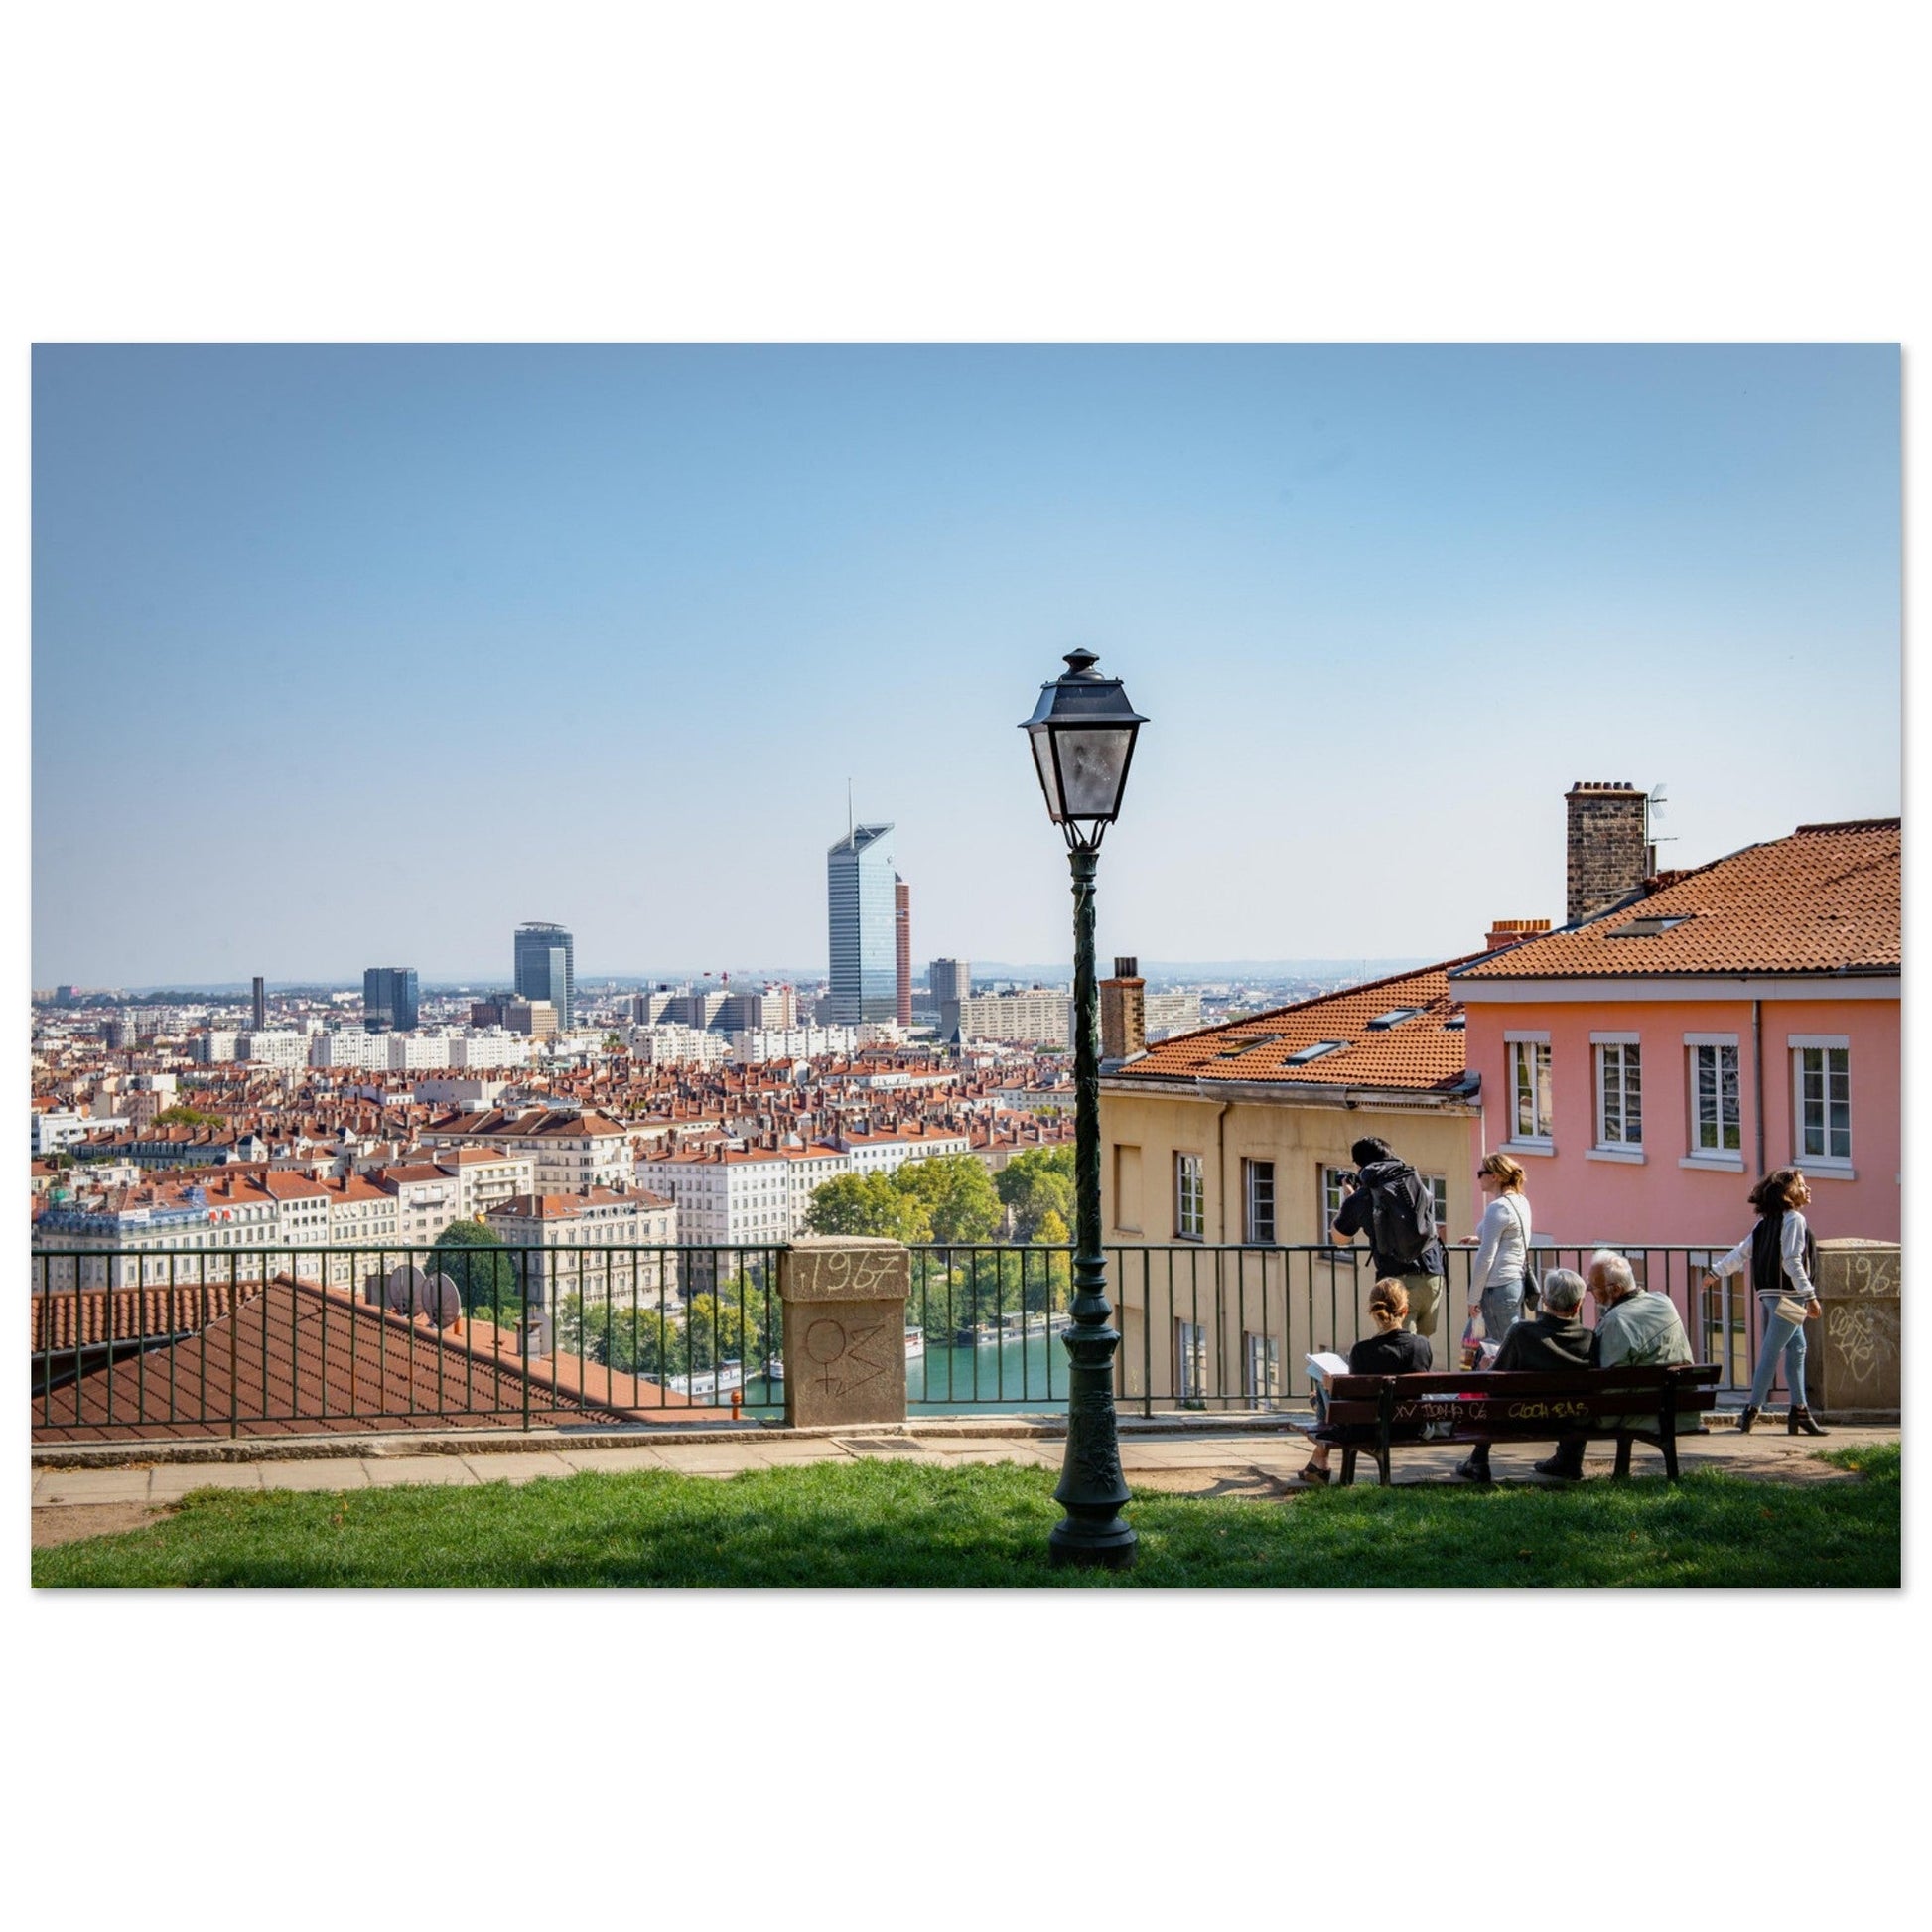 Vente Photo de la Place Bellevue et des tours de Lyon #1 - Tableau photo alu Lyon